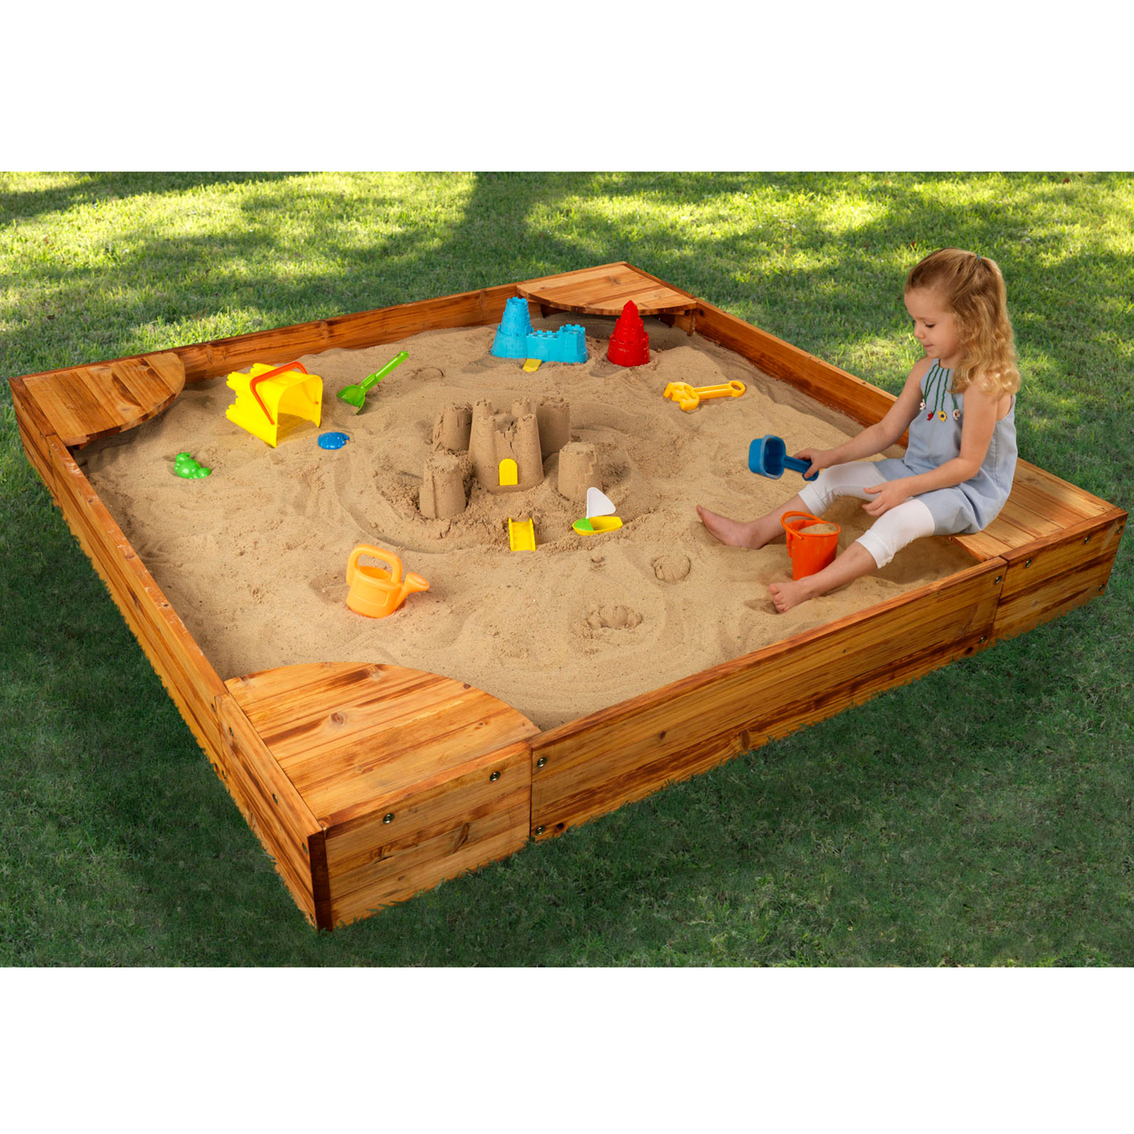 Kidkraft Backyard Sandbox Sandboxes Water Fun Baby Toys Shop The Exchange